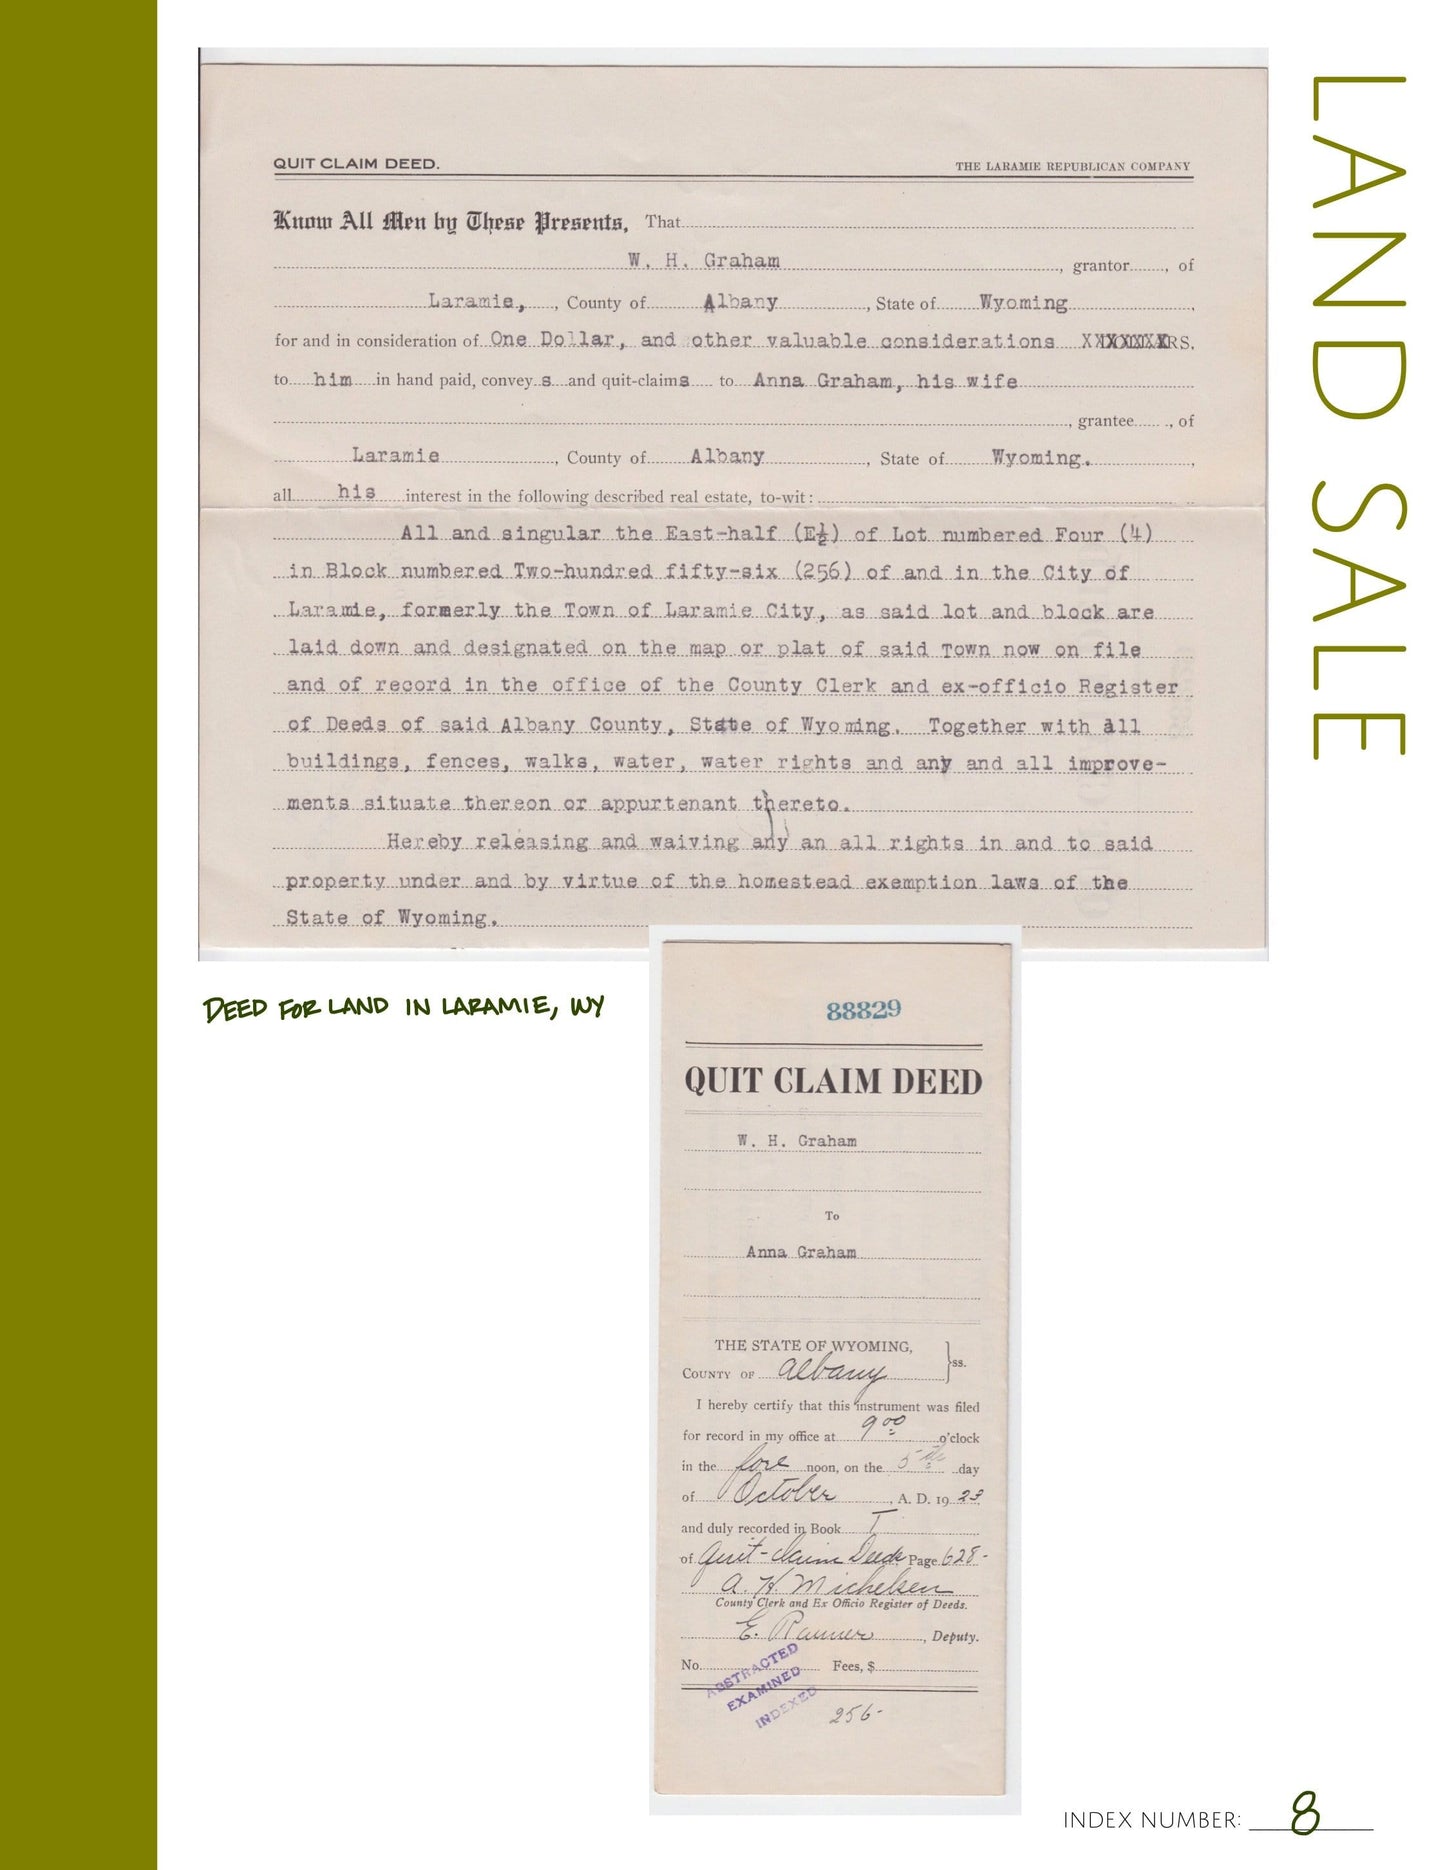 Land Sale: Printable Genealogy Form (Digital Download)